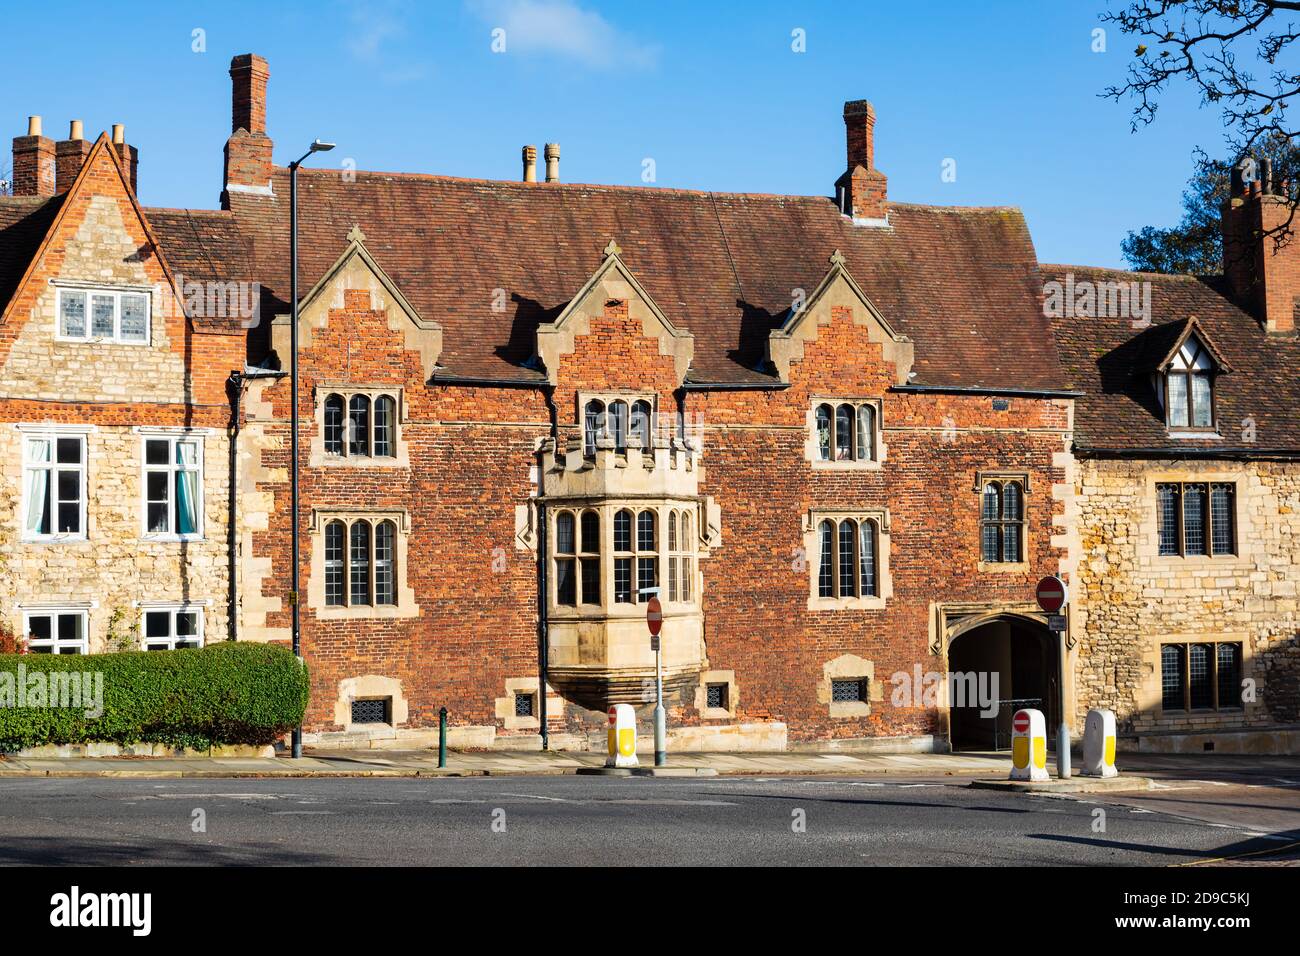 Classe 1, la maison de chancellerie, Minster Yard, Pottergate, Lincoln, Lincolnshire, Angleterre, Royaume-Uni. Banque D'Images